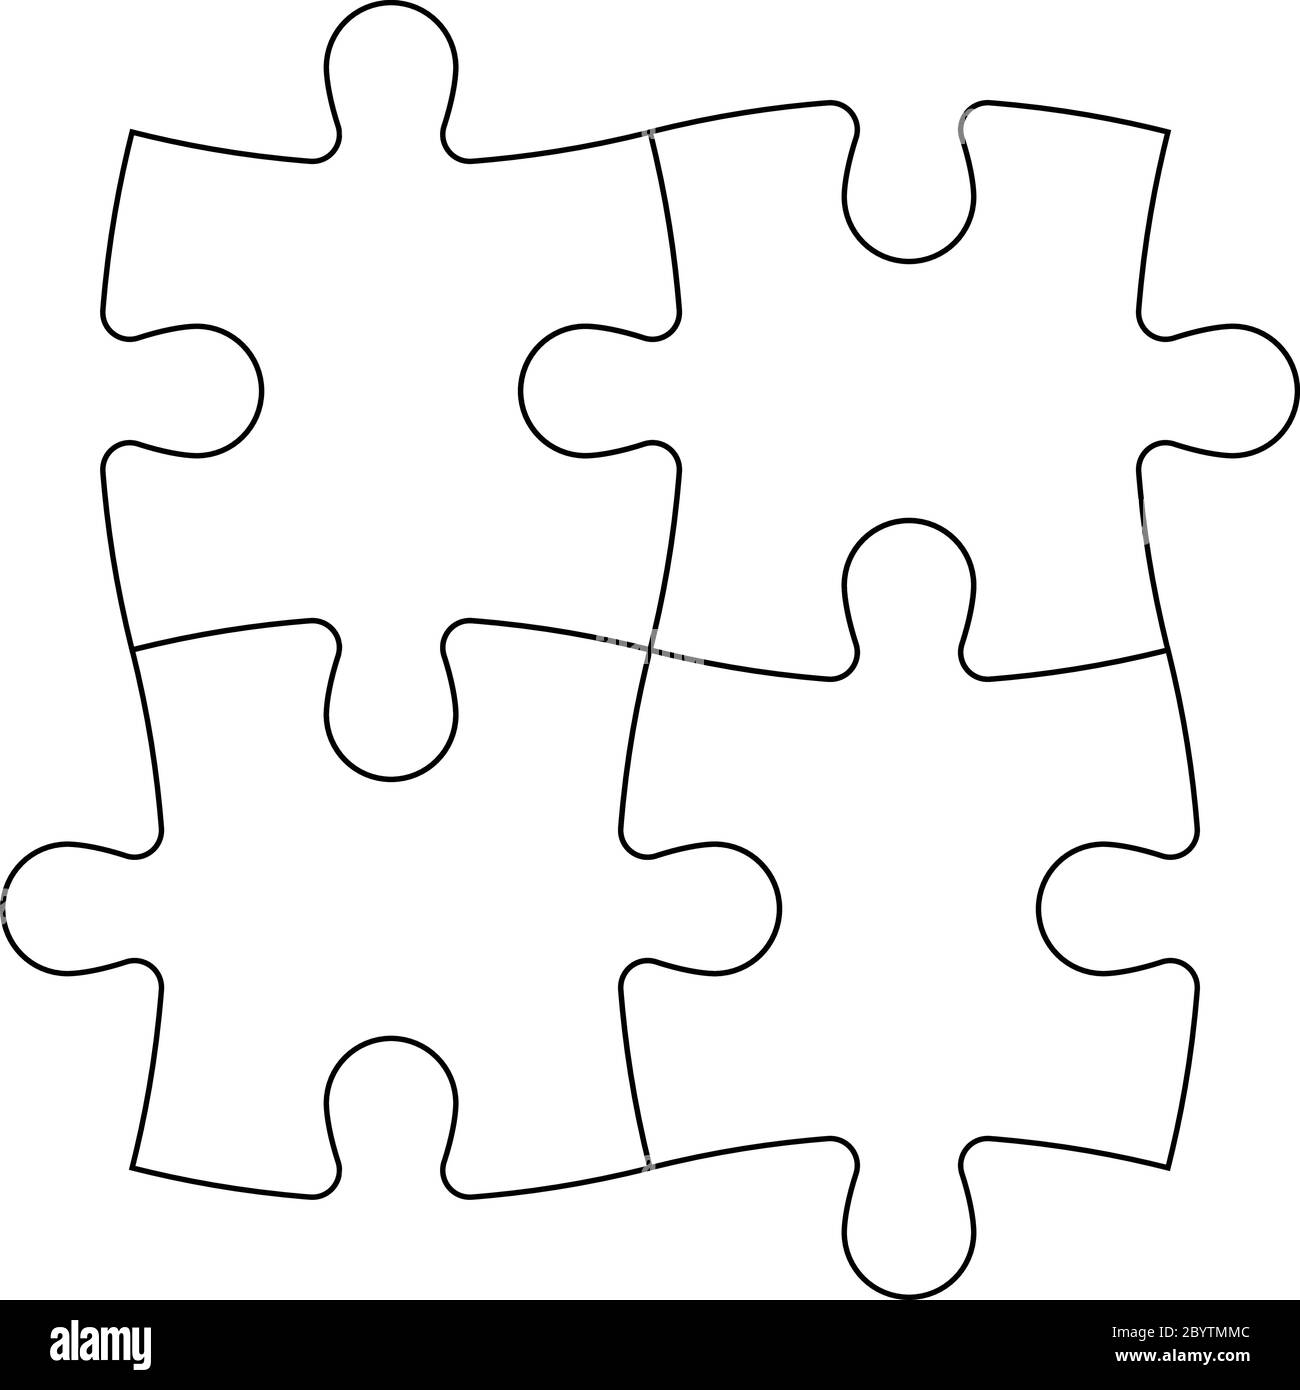 Gelöst Puzzle von vier Teilen. Teamzusammenarbeit, Teamarbeit oder Lösungsgeschäft. Einfache flache Vektorgrafik mit schwarzer Umrandung auf weißem Hintergrund. Stock Vektor